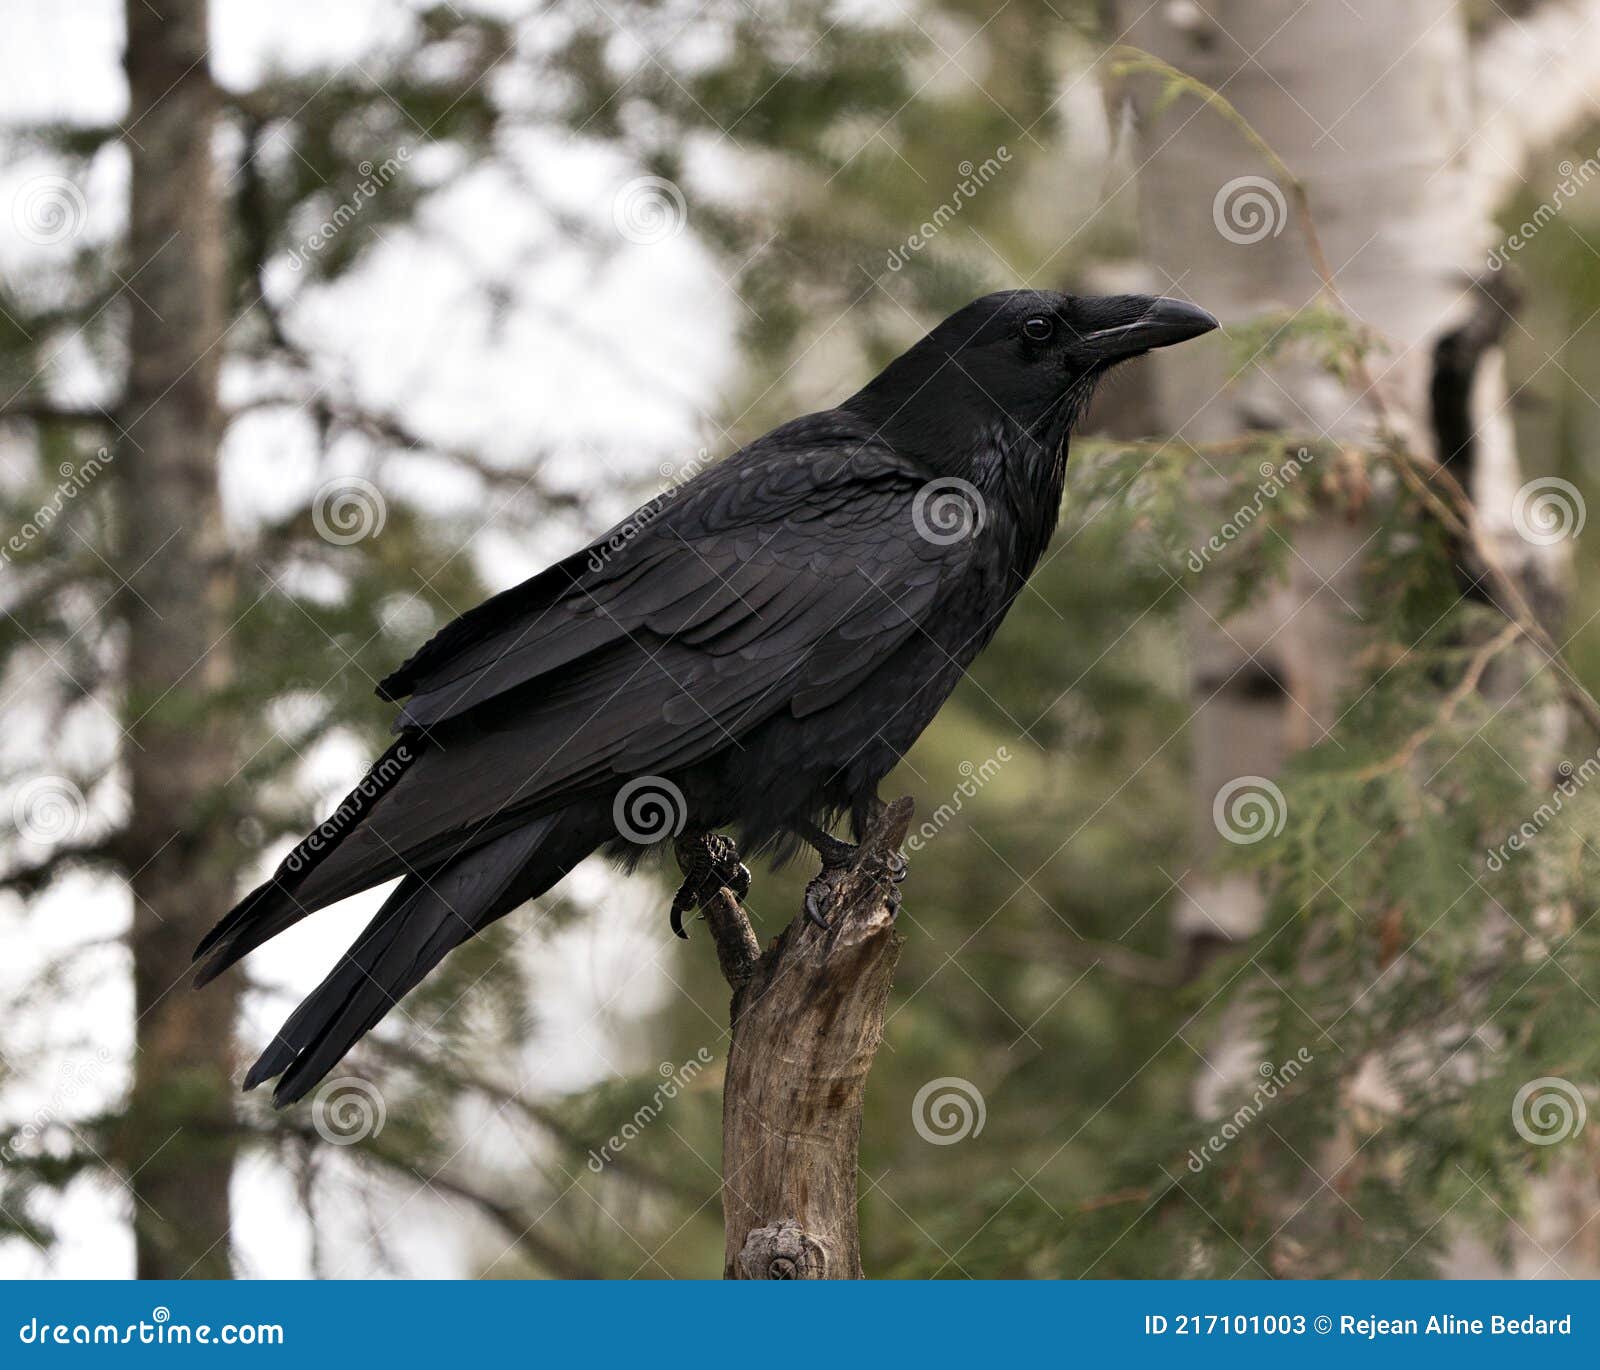 Picture raven profile 